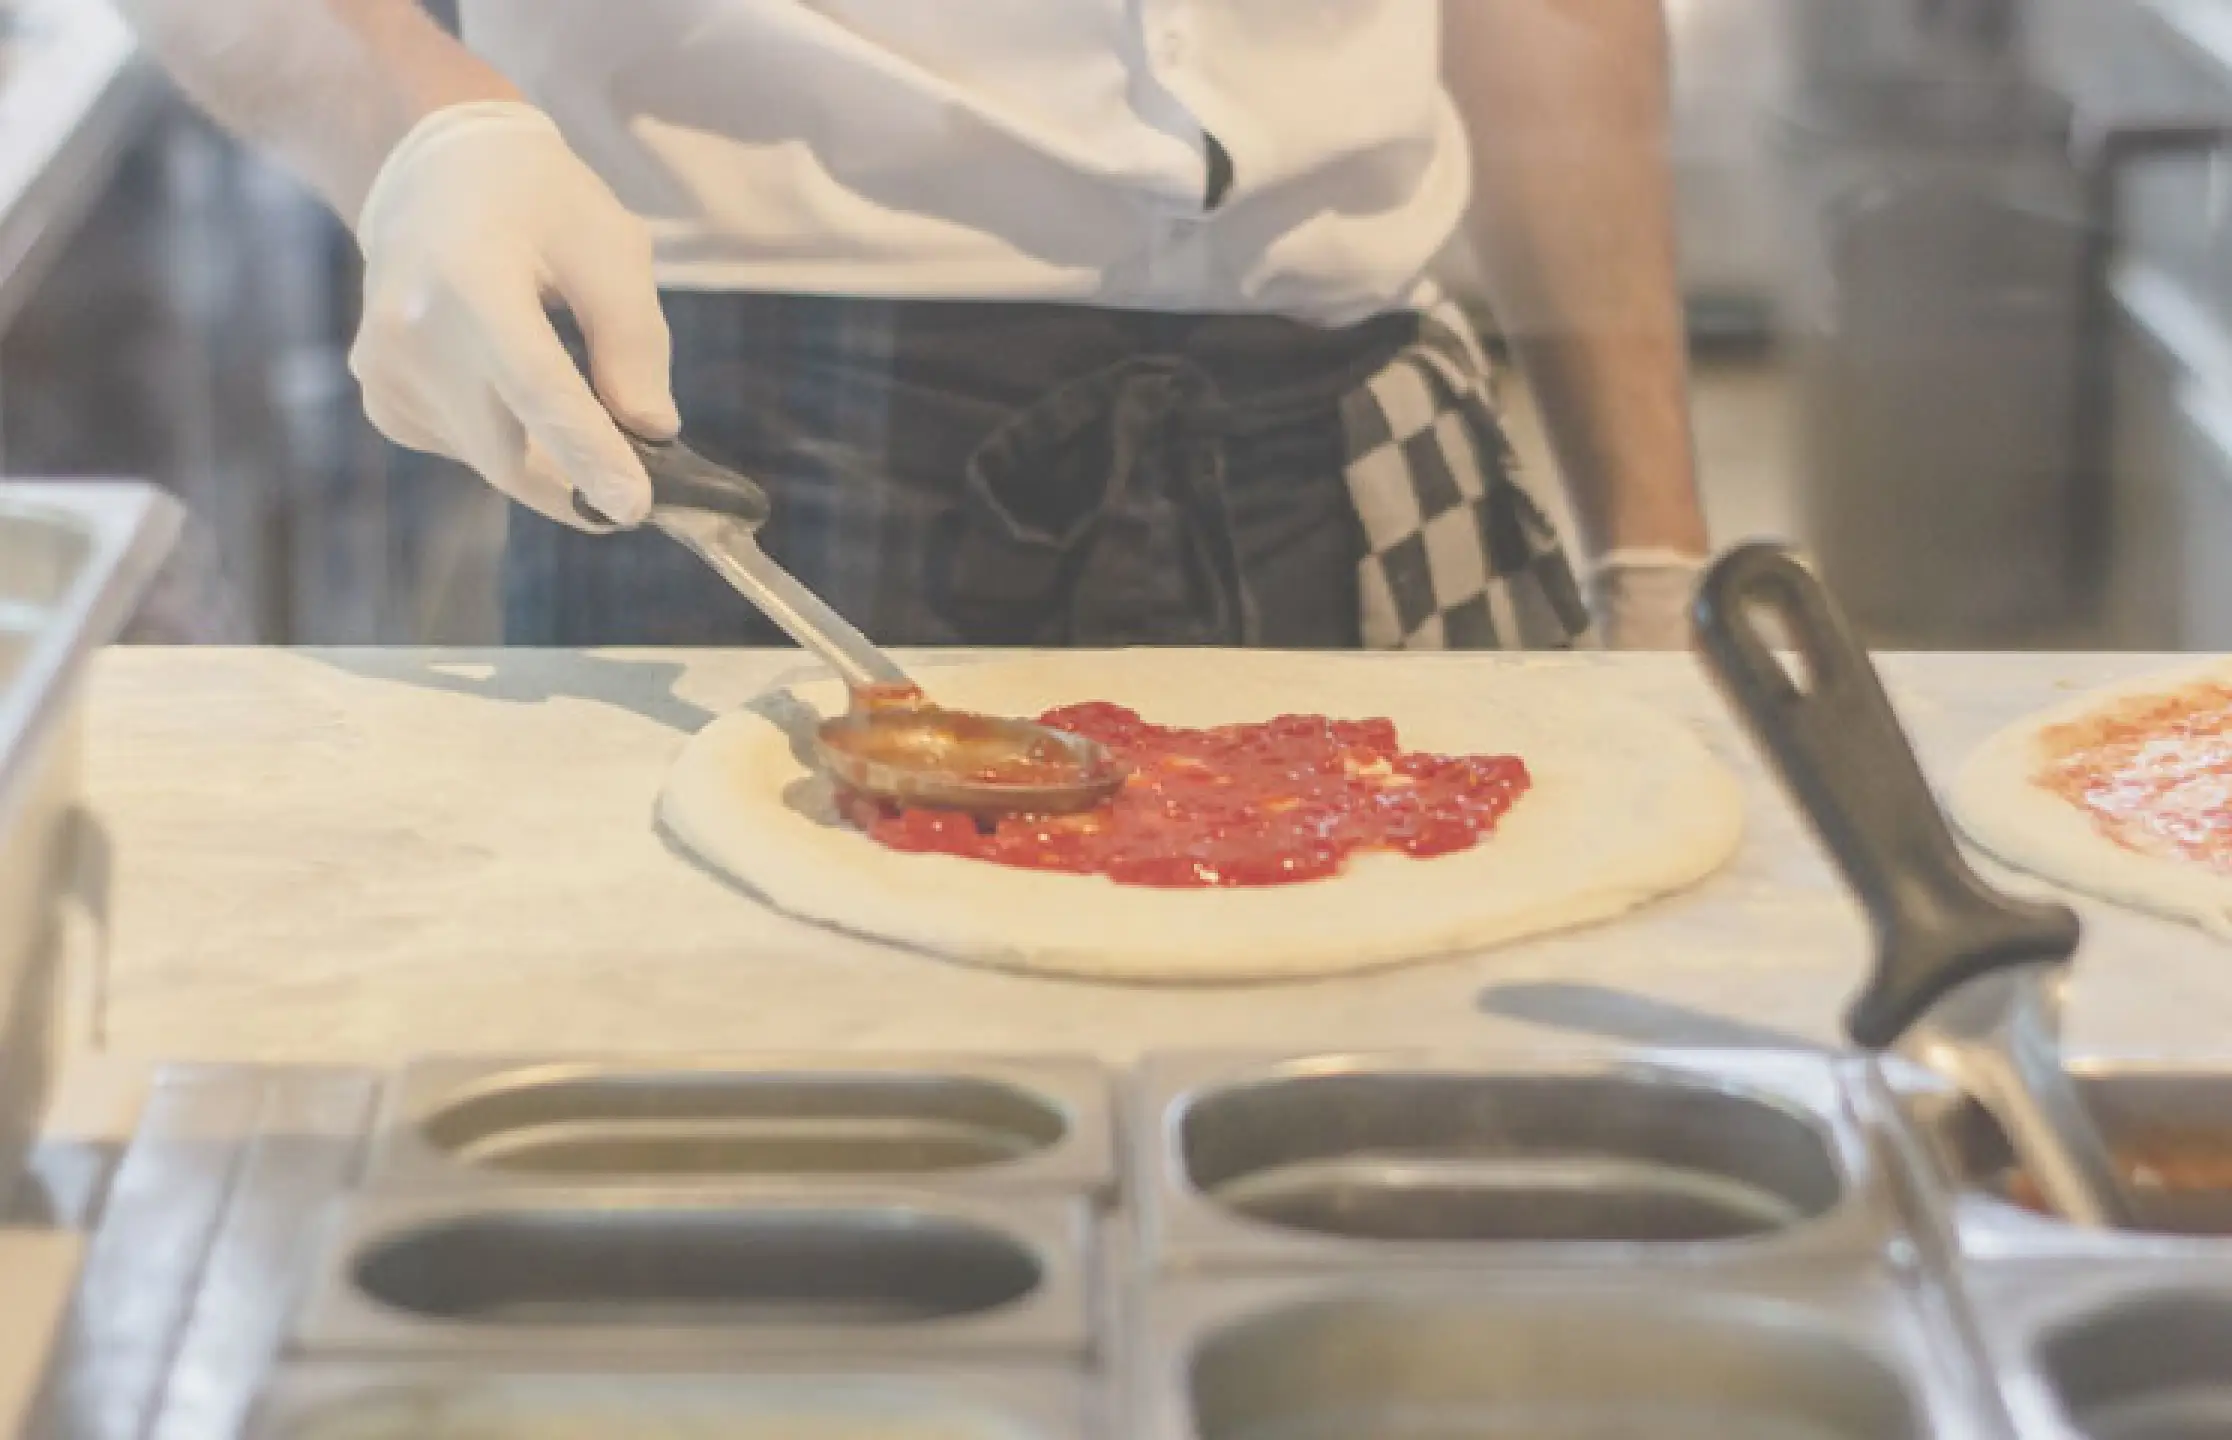 Kok belegt pizza in keuken restaurant